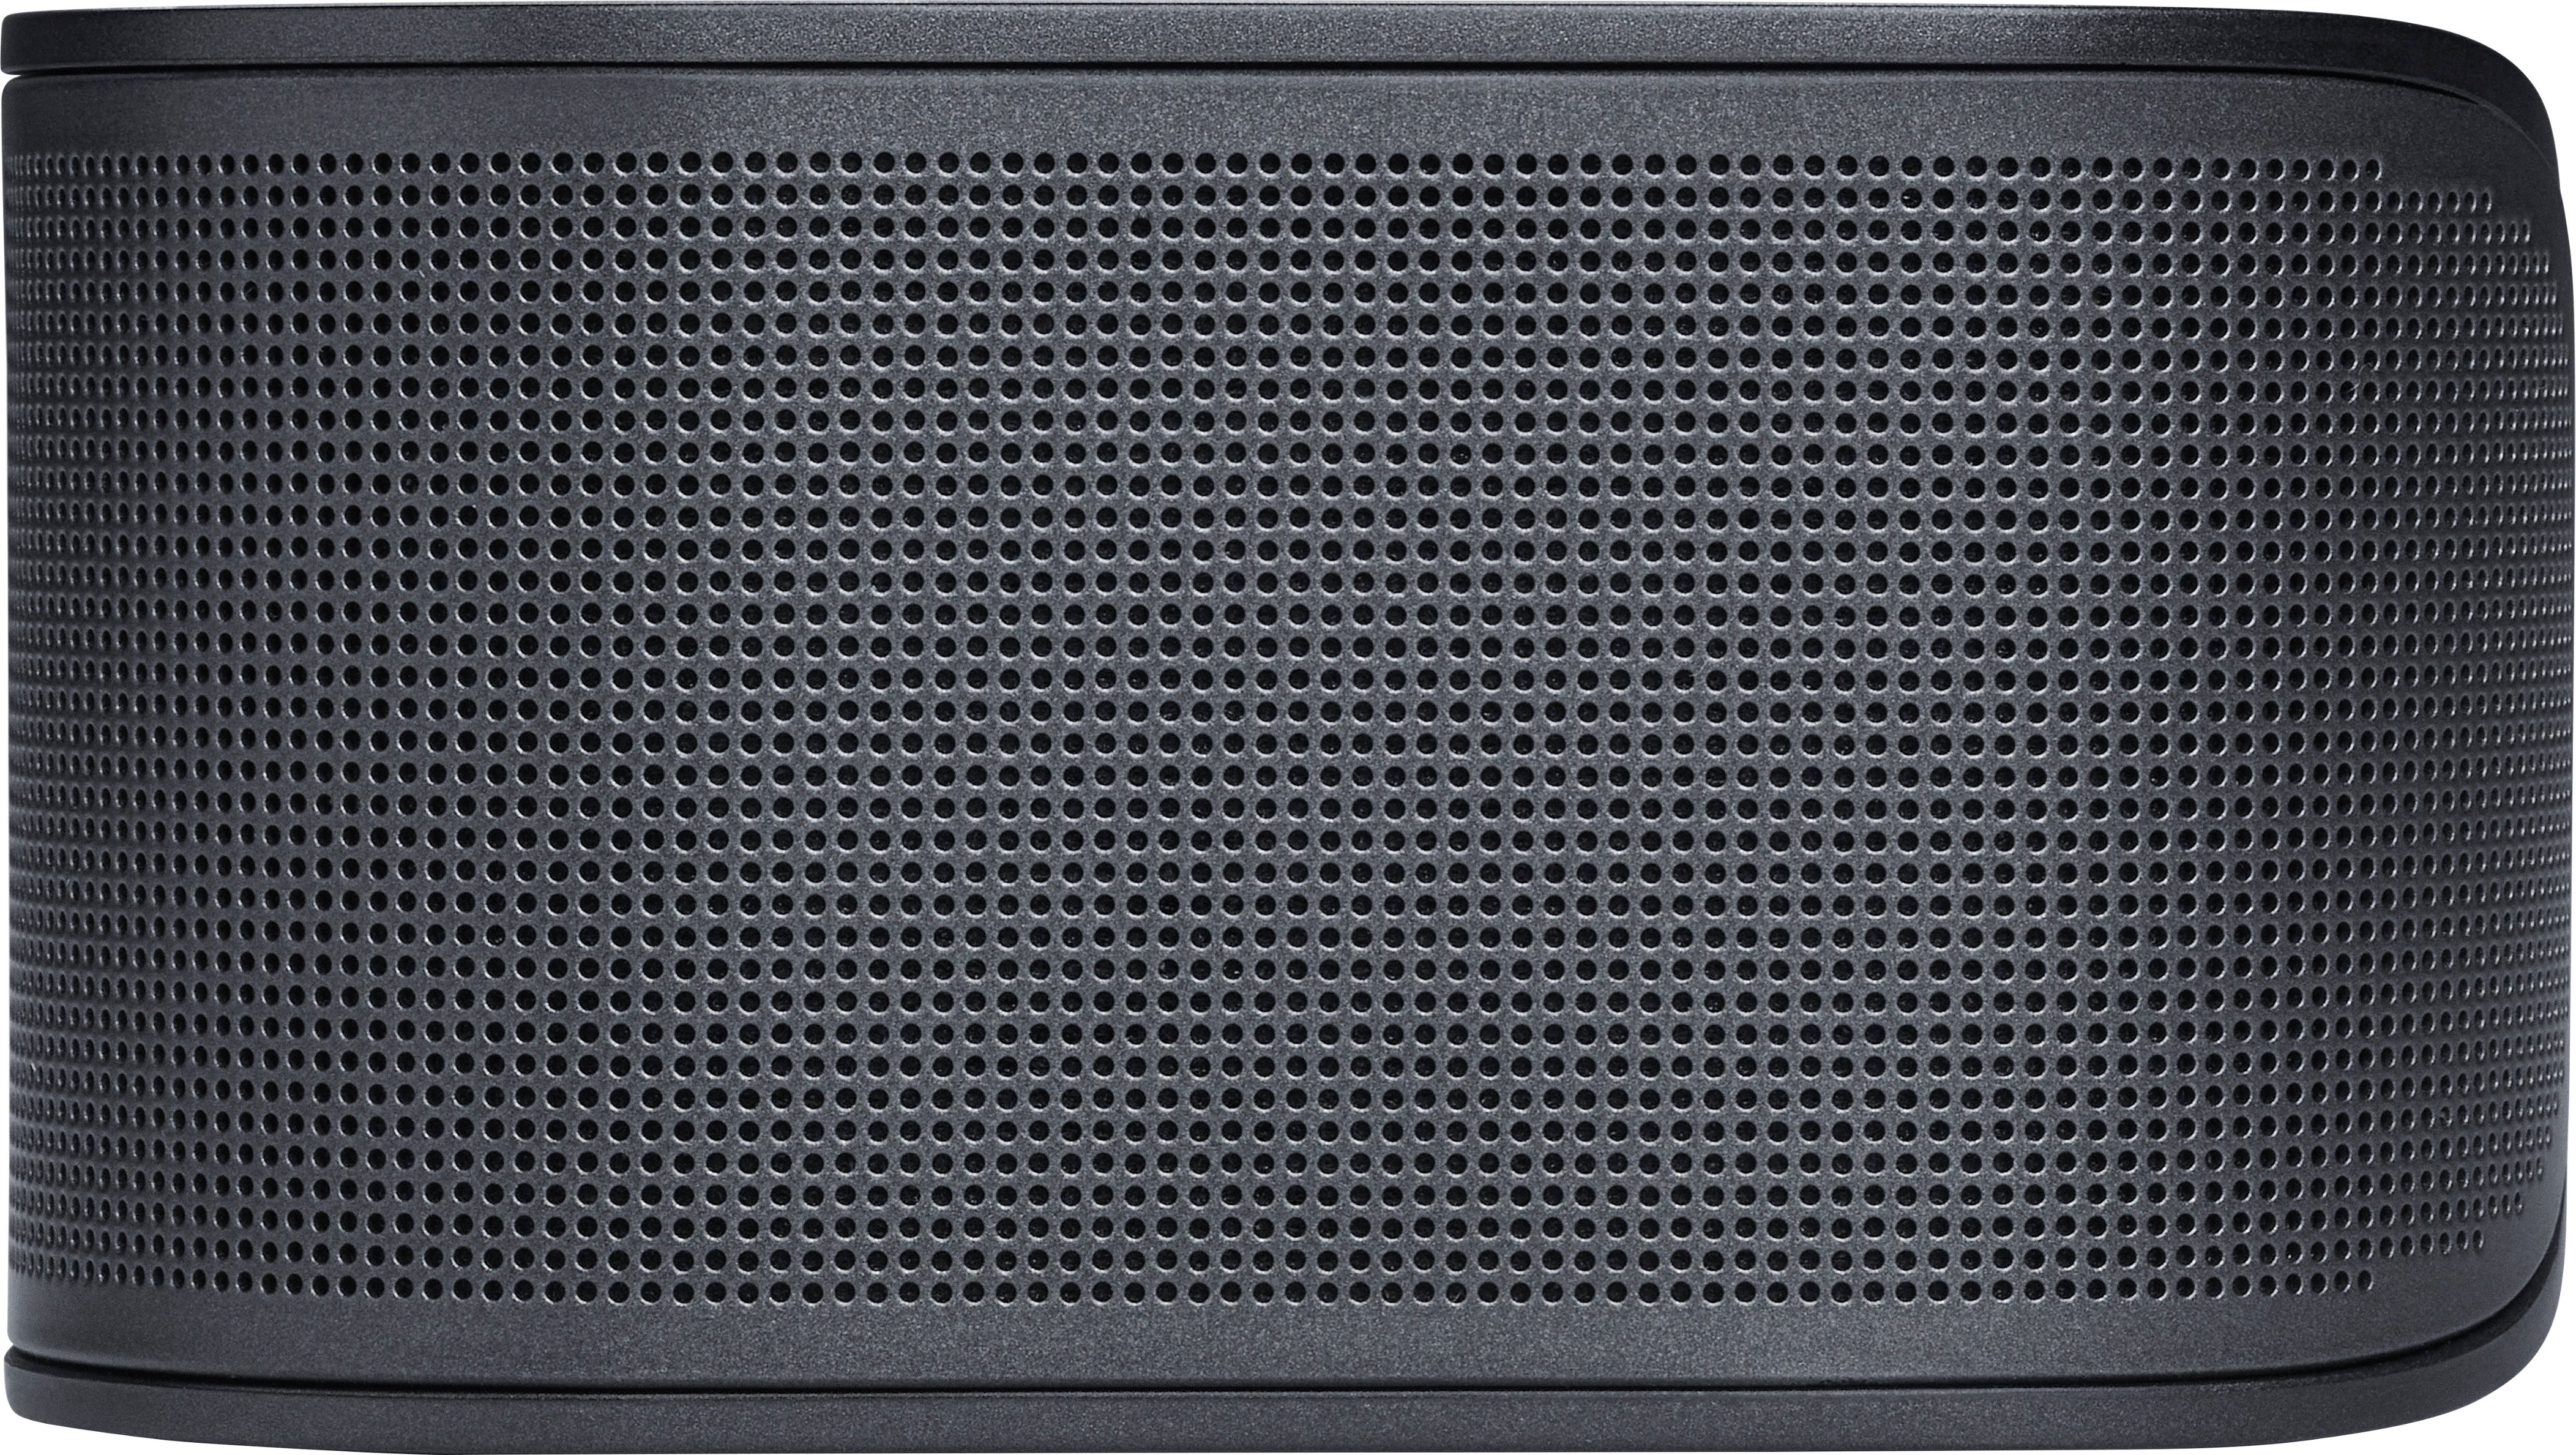 JBL BAR 500 5.1ch Soundbar Best Black Buy with and Dolby JBLBAR500PROBLKAM Multibeam - Atmos